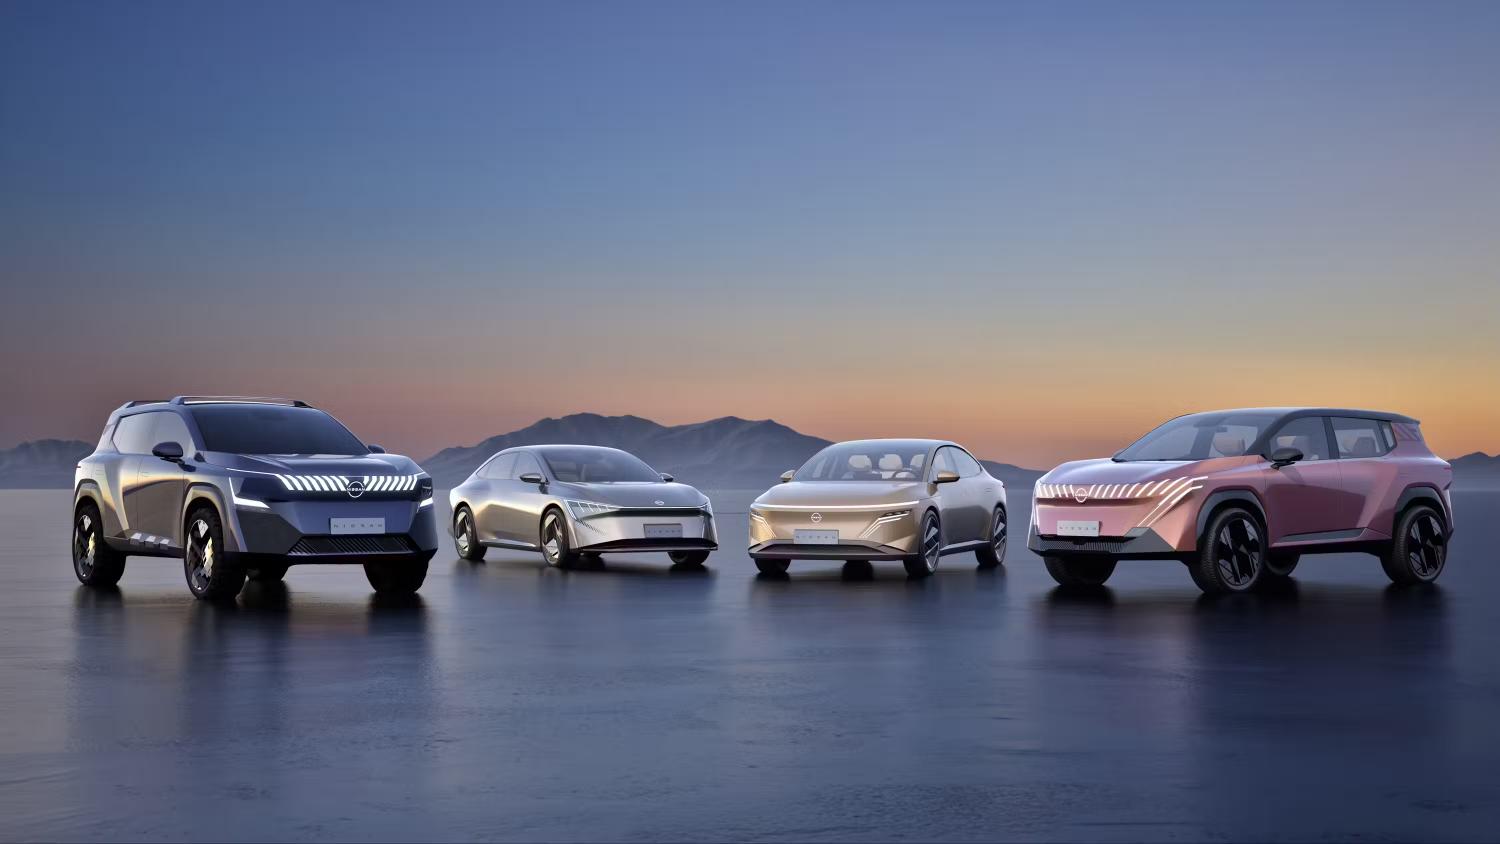 نيسان تكشف عن 4 نماذج كهربائية جديدة في معرض السيارات الصيني